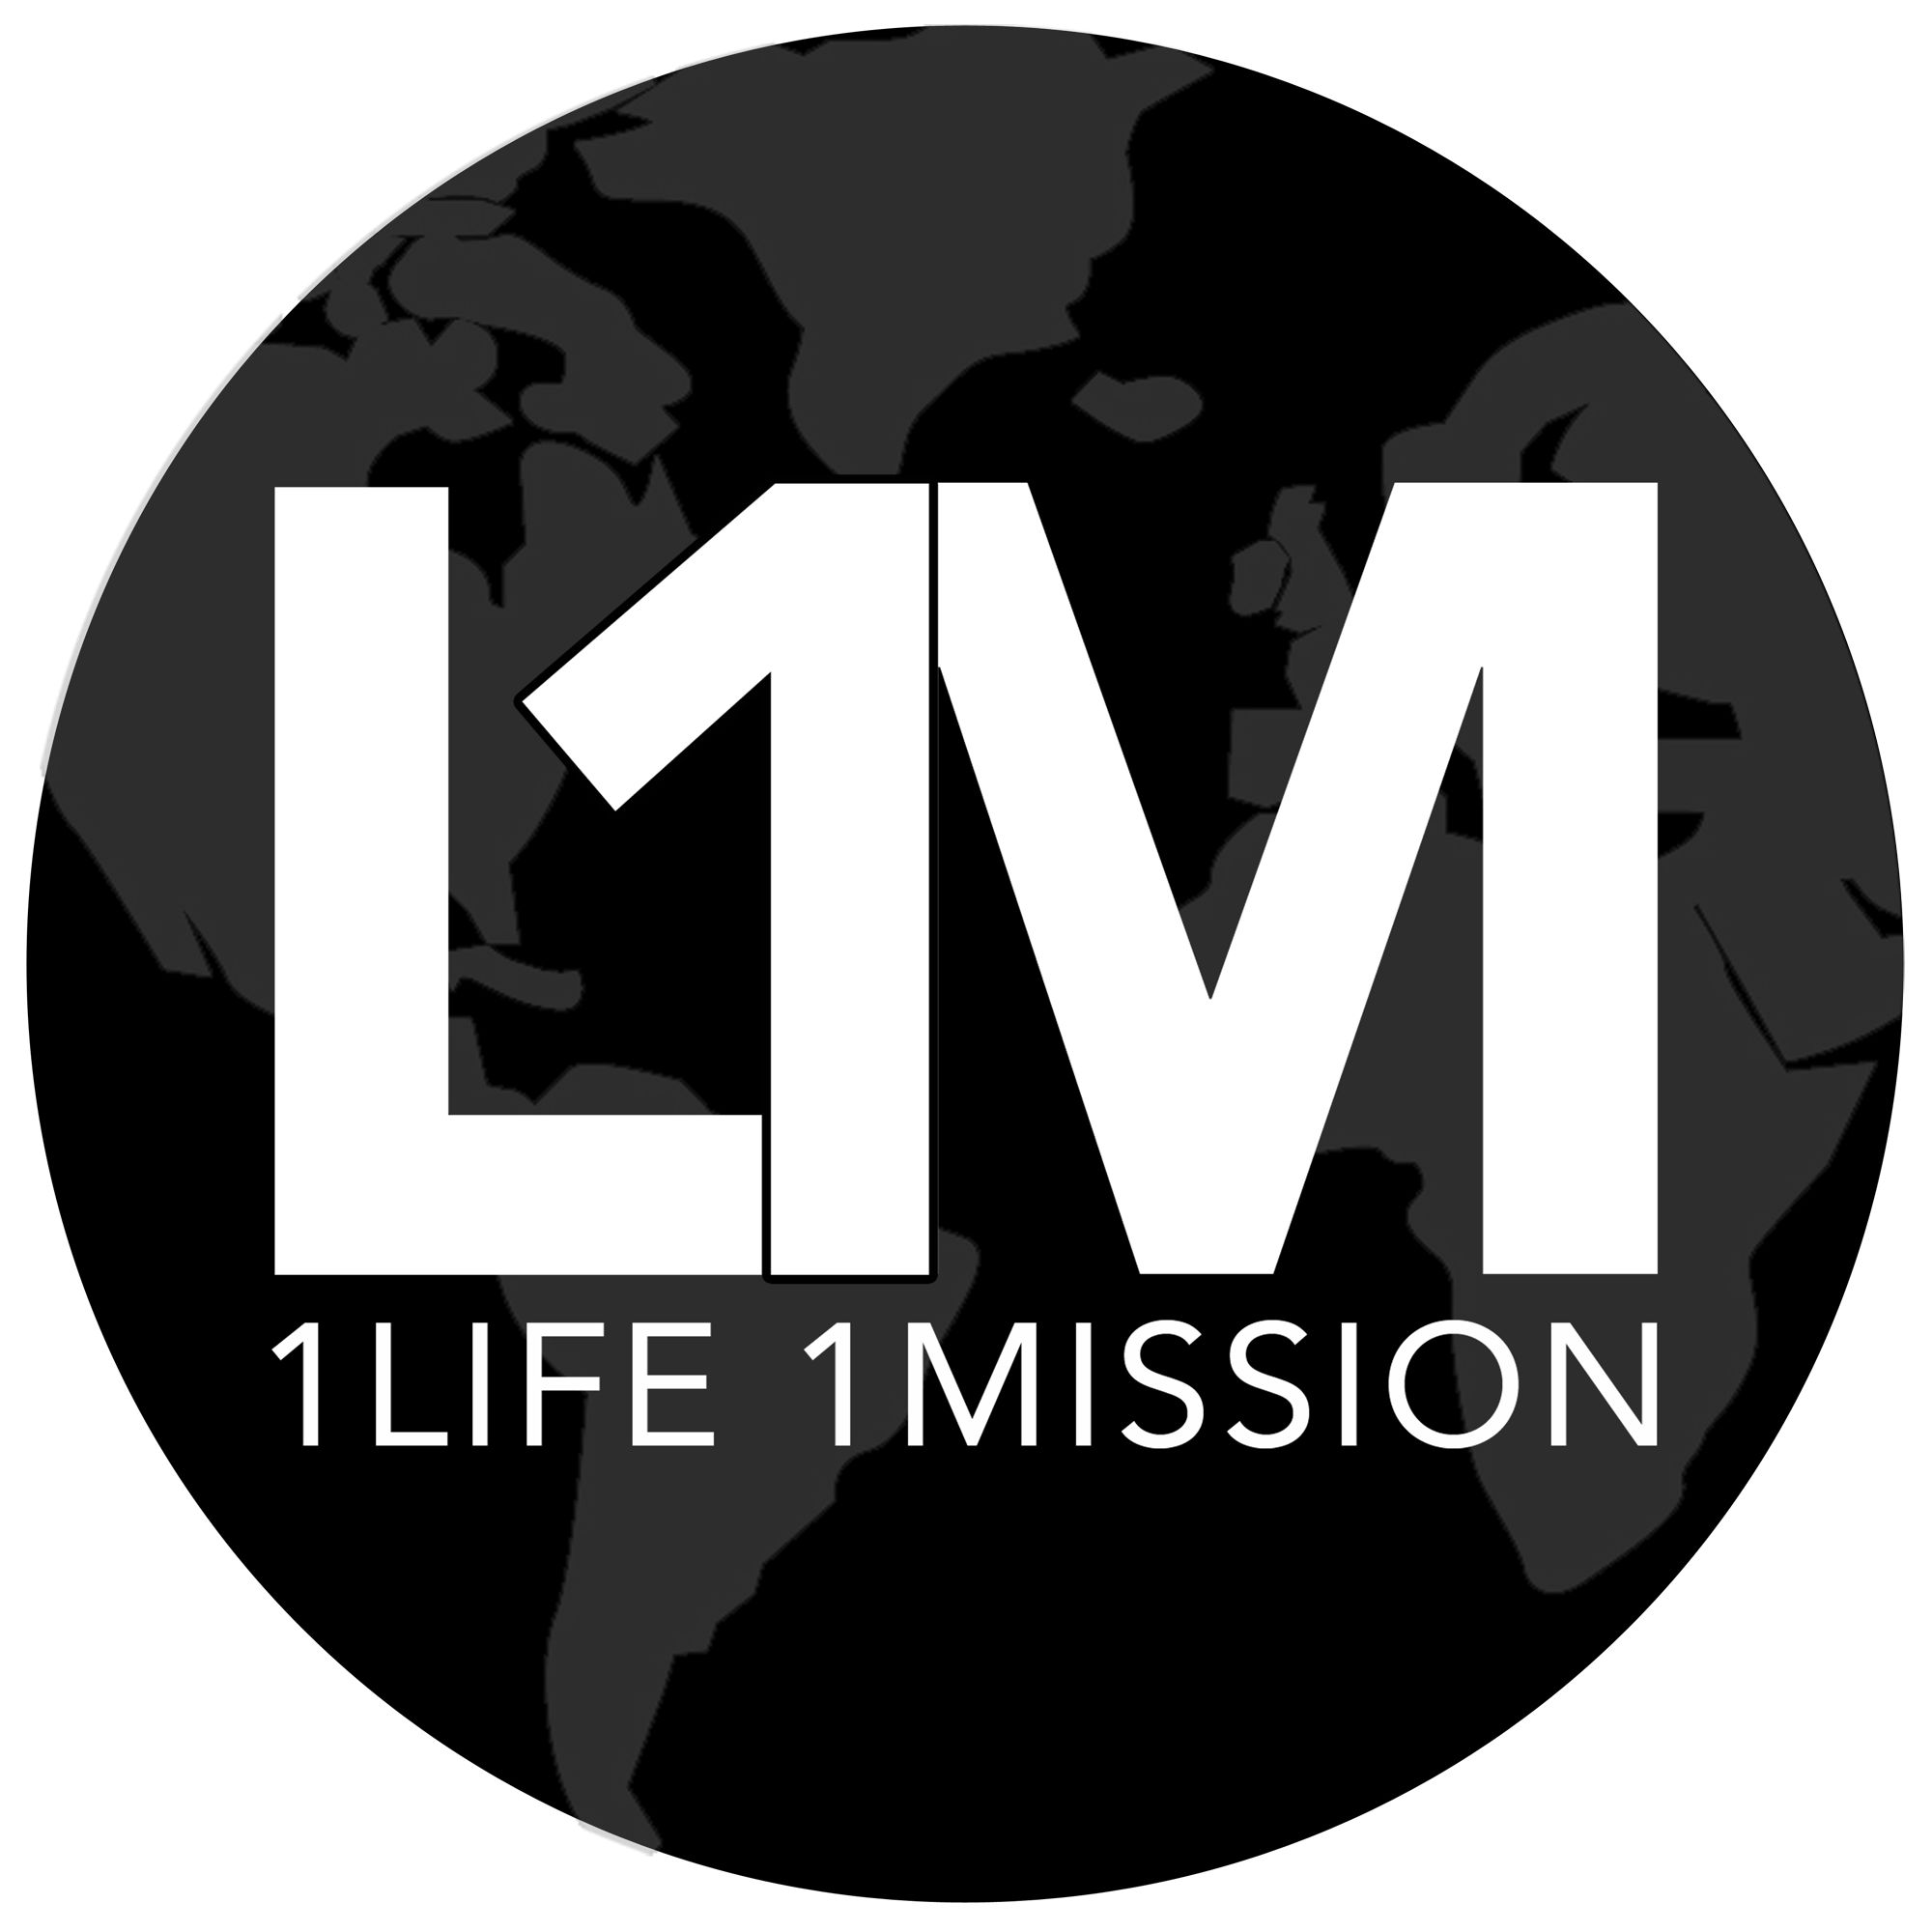 1 Life 1 Mission